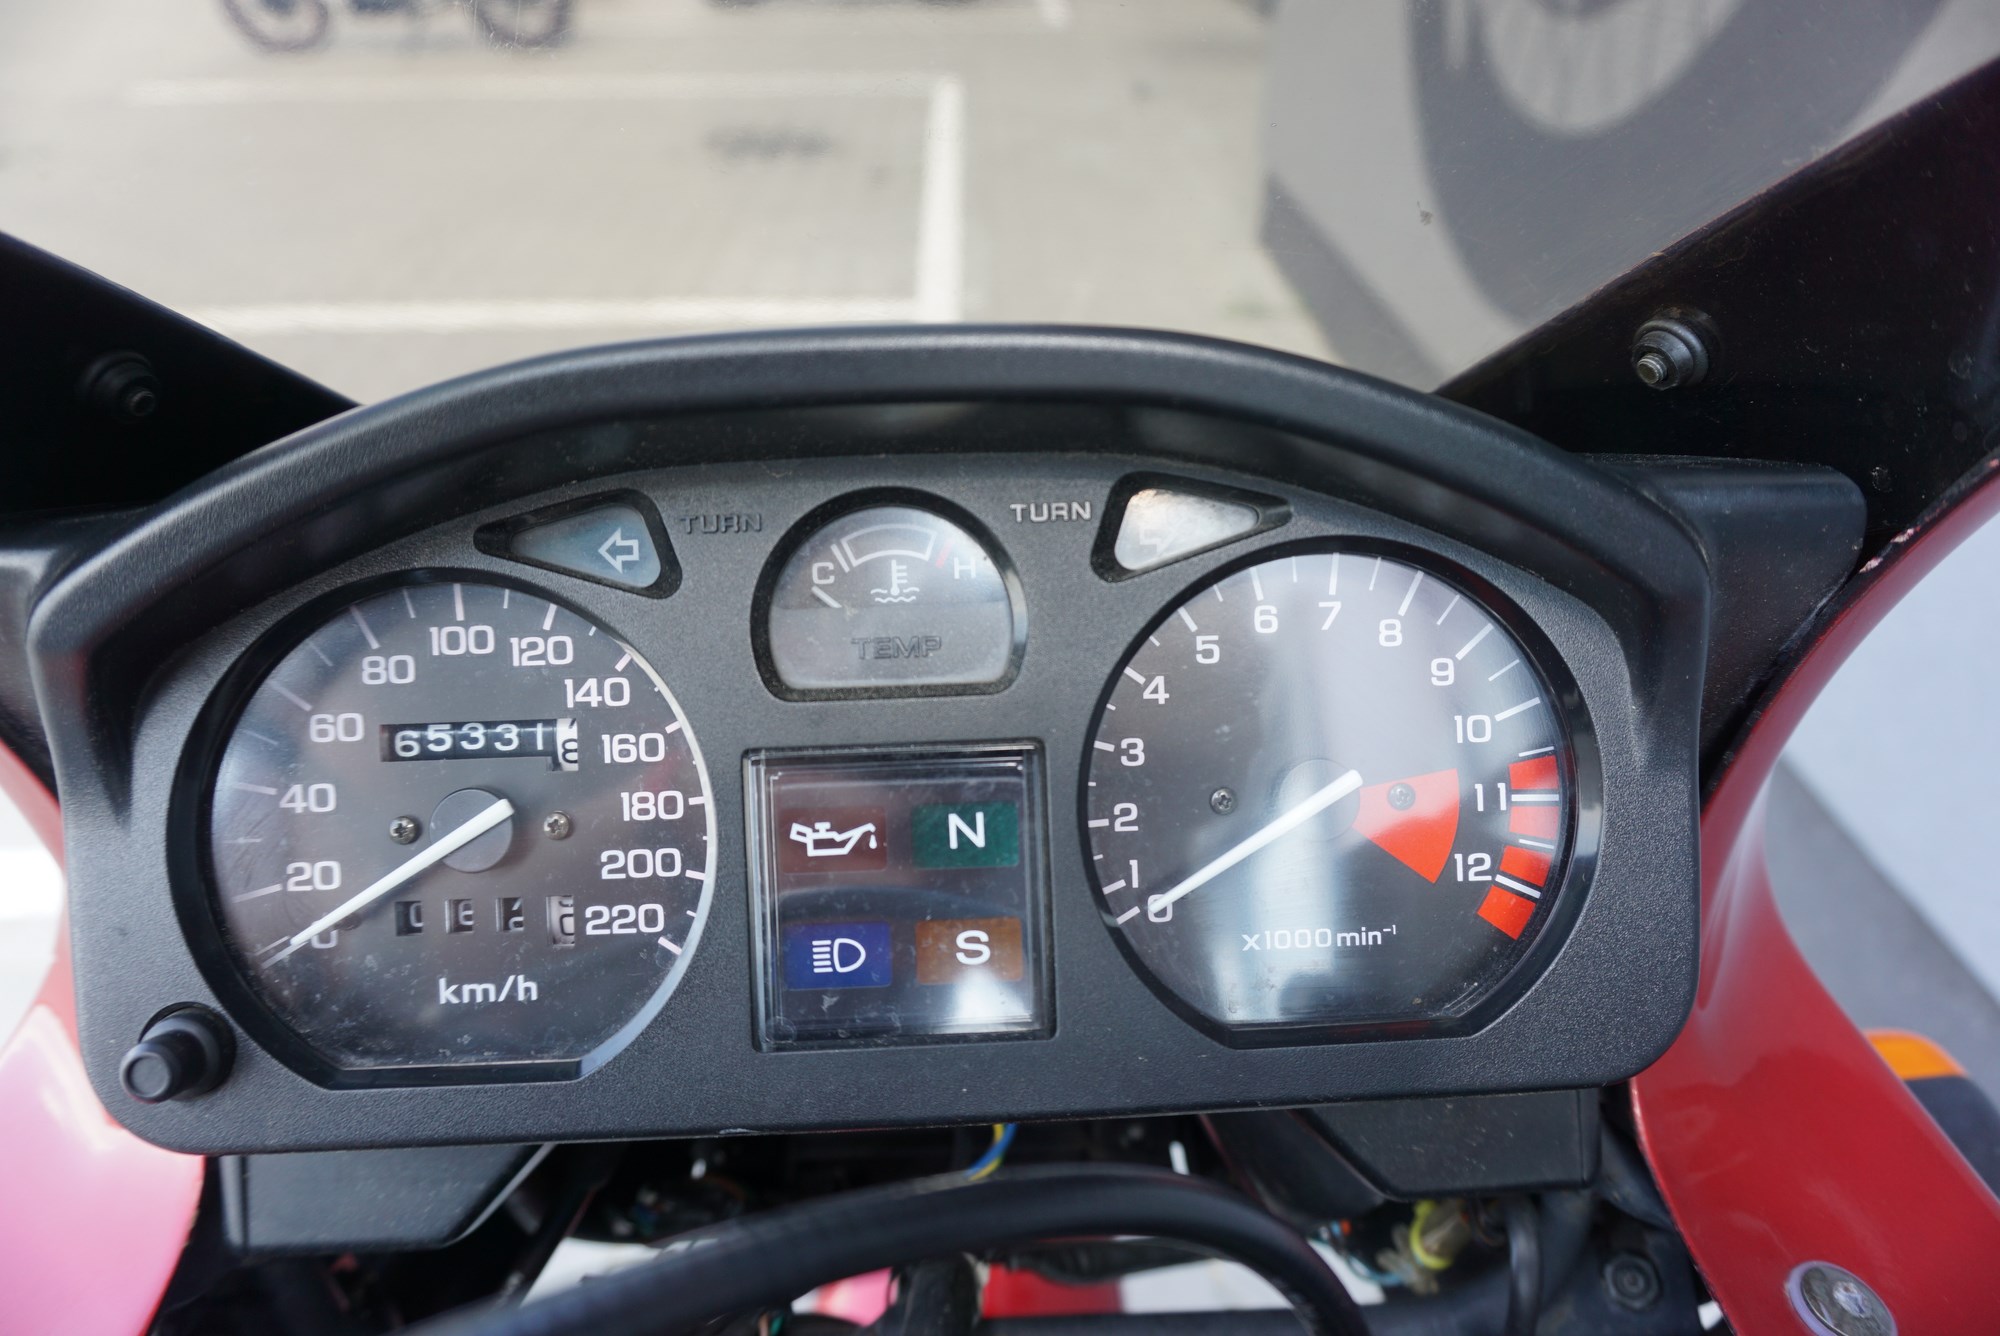 Honda CB 500